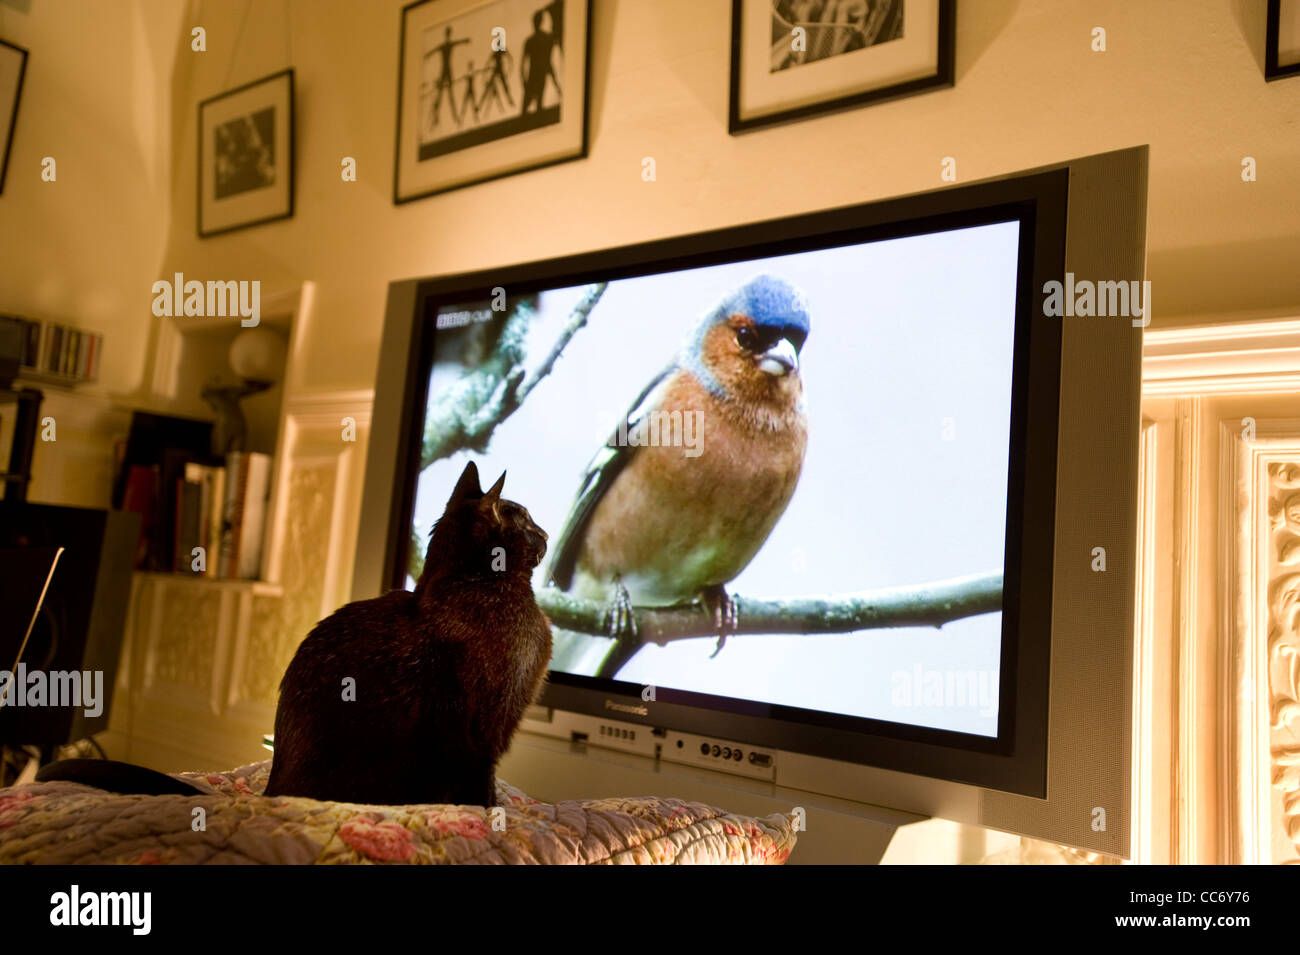 Regarde un chat noir ( Fringilla coelebs Chaffinch ) comme un oiseau sur une branche sur un grand écran plasma de télévision Panasonic Banque D'Images